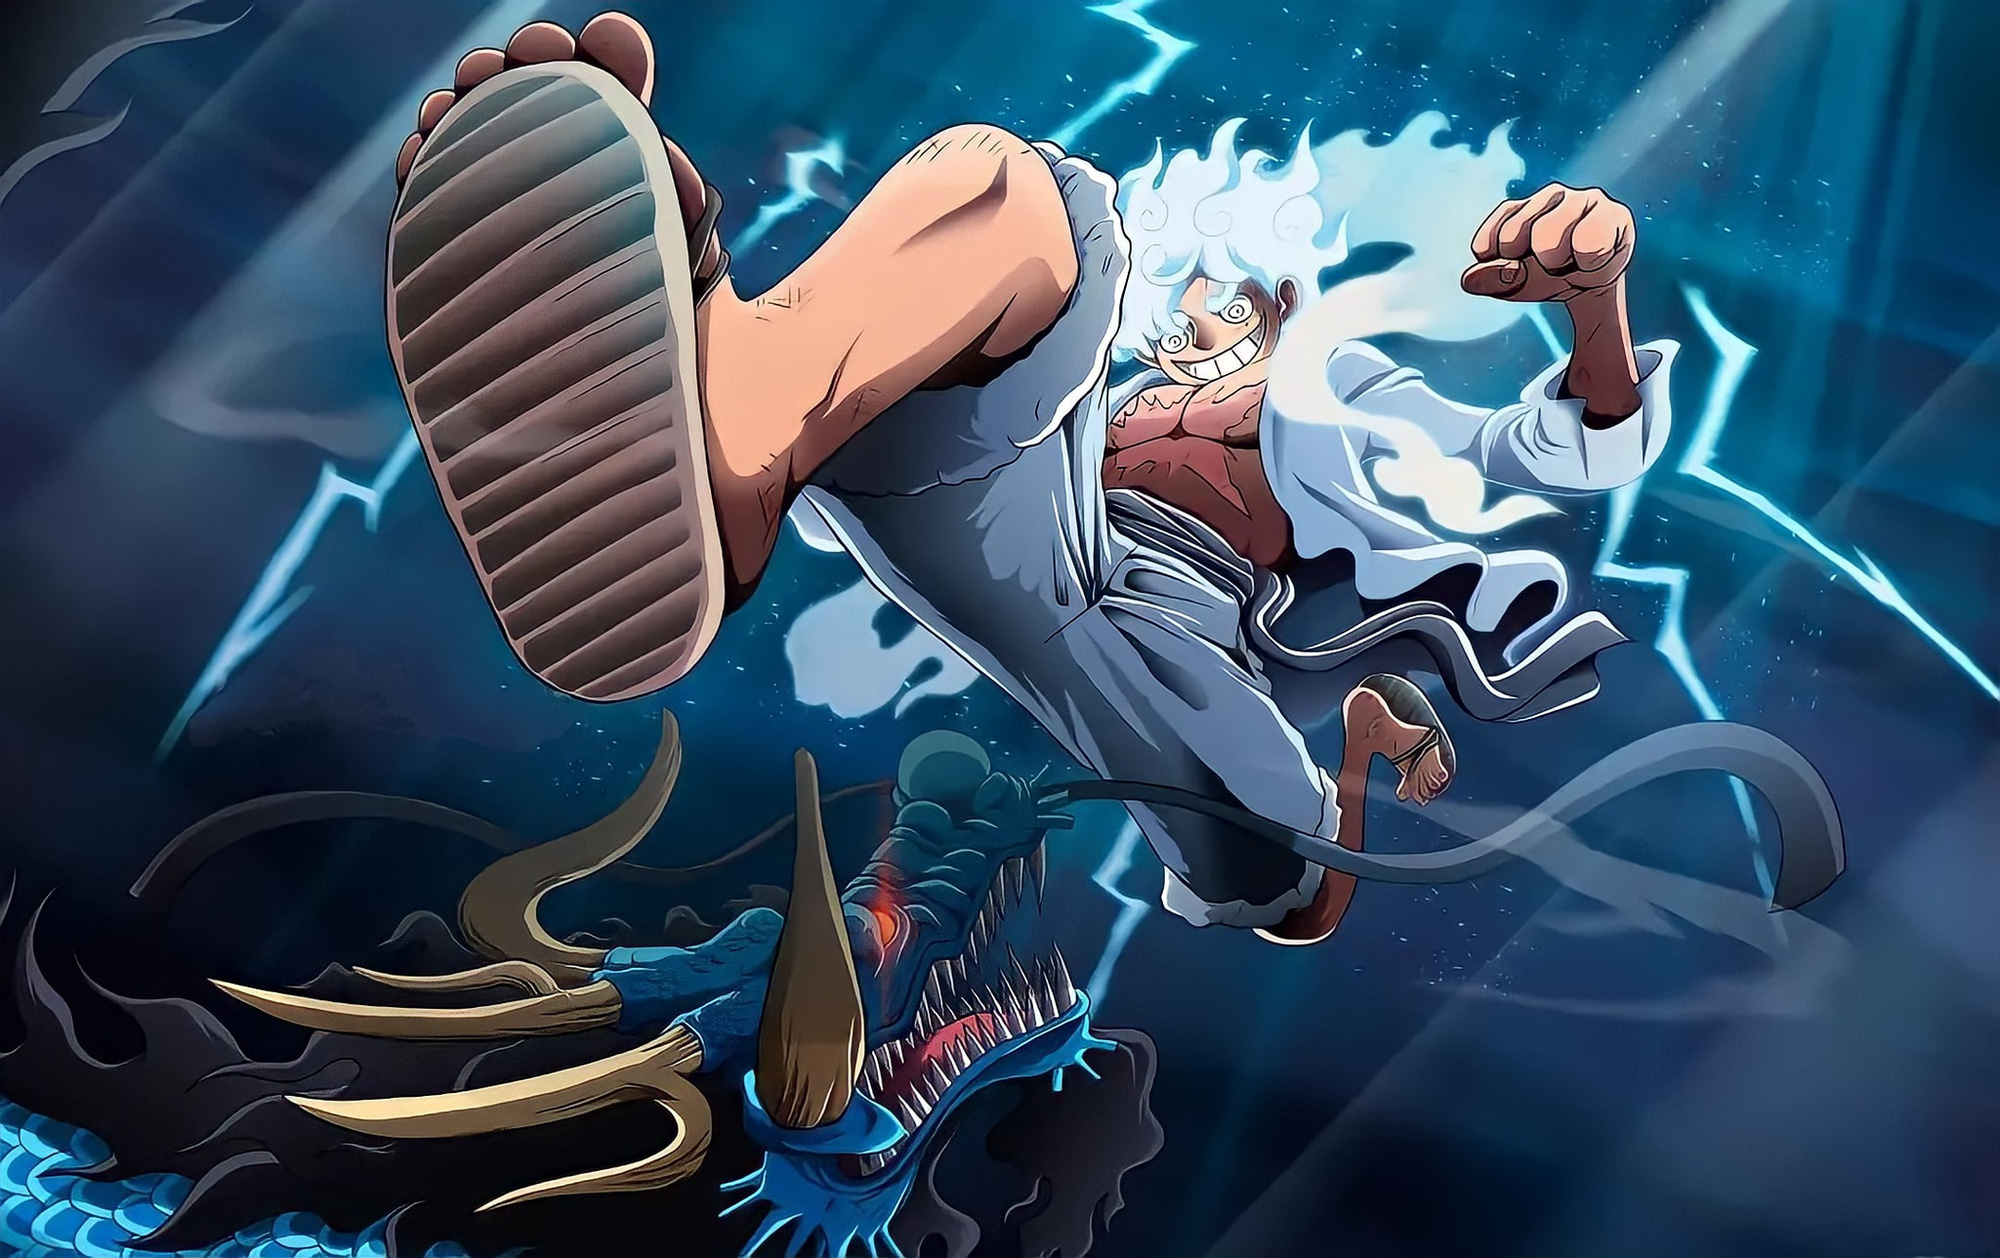 Nếu bạn yêu thích One Piece, bạn không thể bỏ qua hình ảnh về Luffy thức tỉnh trái ác quỷ! Đó là khoảnh khắc hào hùng khi cậu trở thành đại cao thủ trong trận chiến. Hãy xem ngay để cảm nhận sức mạnh của Luffy!